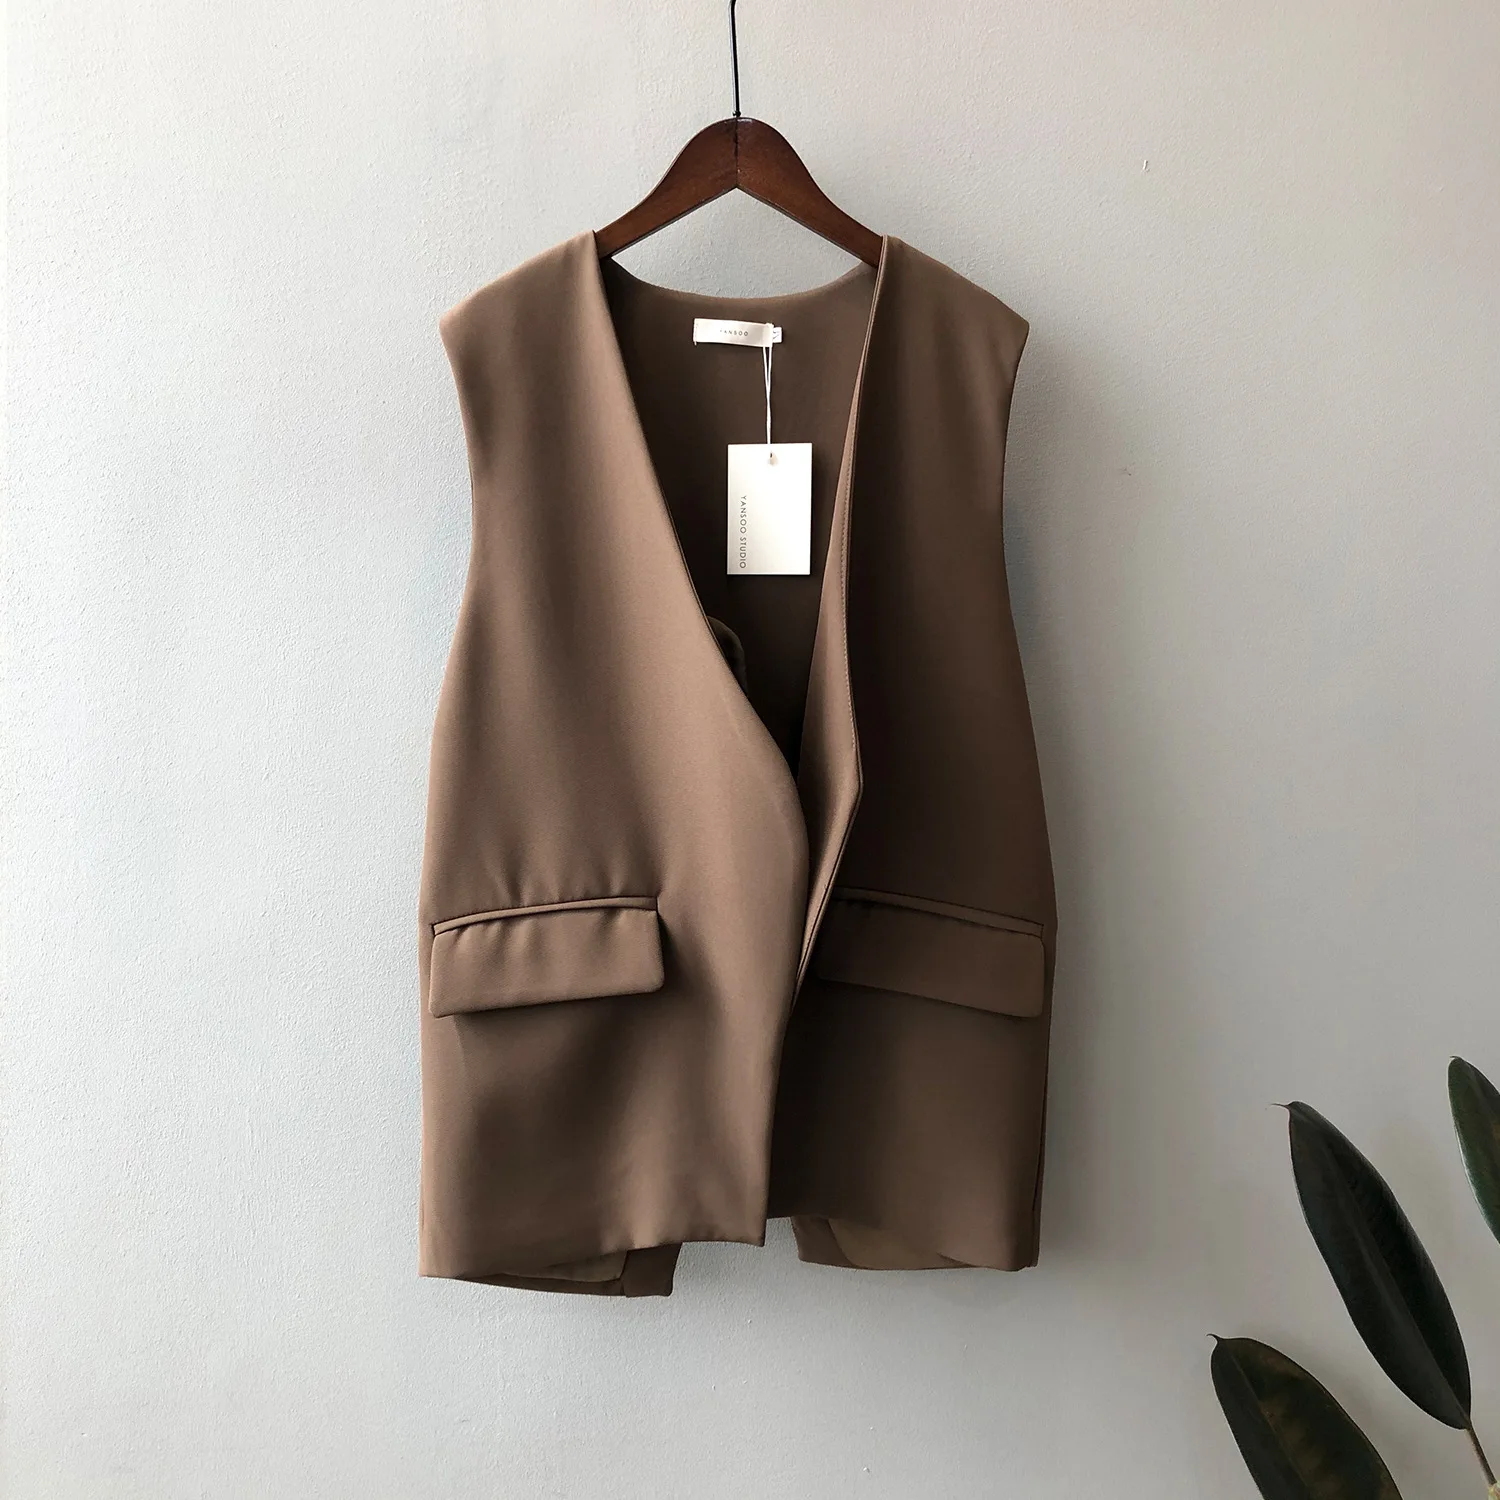 Female Suit Vest 2022 Fall Korean V-neck Sleevless Cardigan Loose Fashion Elegant Lady Back Slit Workplace Coat Jacket Clothing images - 6